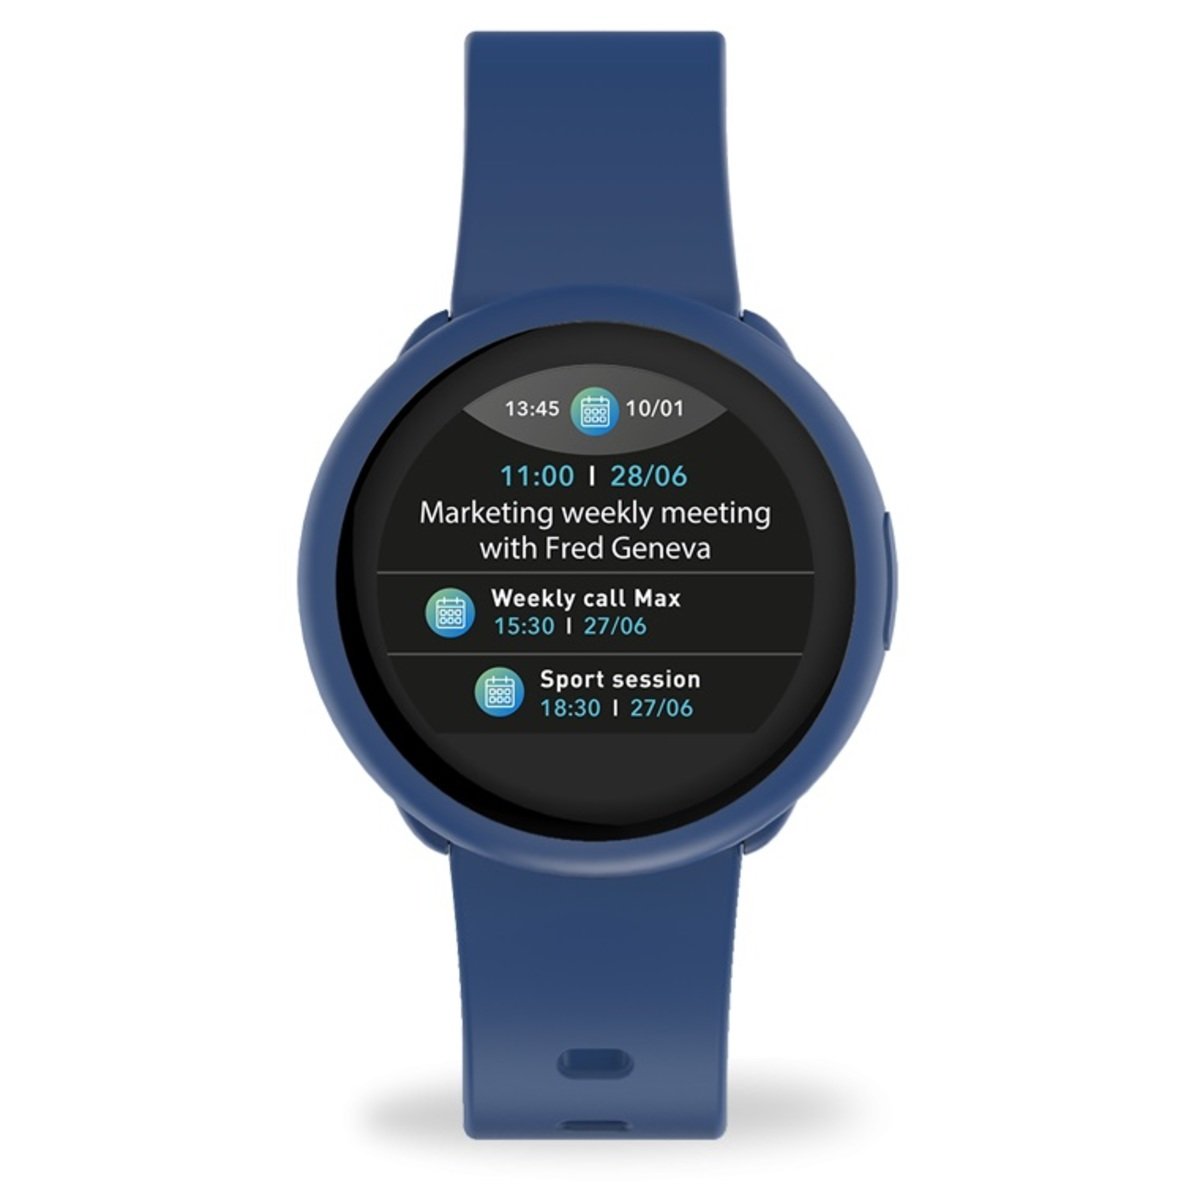 MyKronoz ZeRound3 Lite Smartwatch Navy Blue